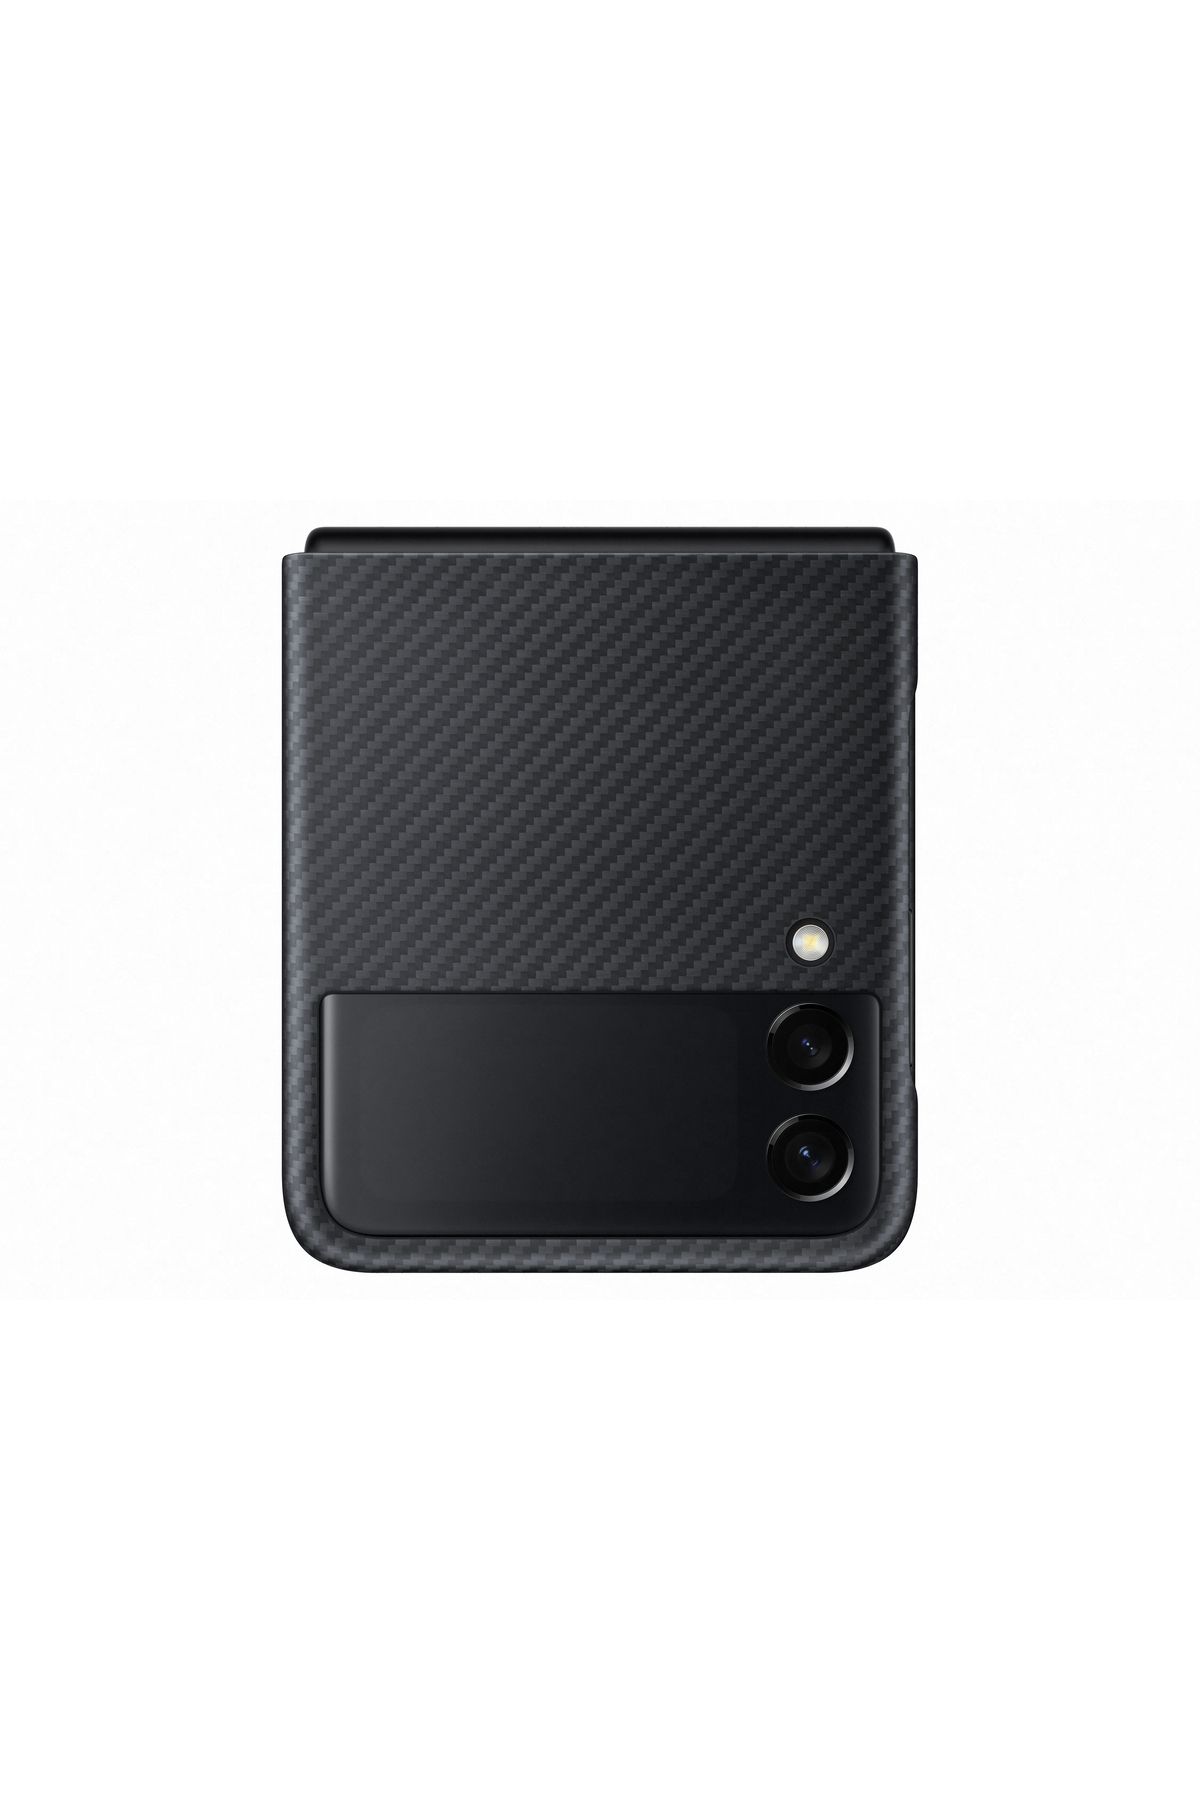 Samsung Galaxy Z Flip3 5g Aramid Kılıf Siyah